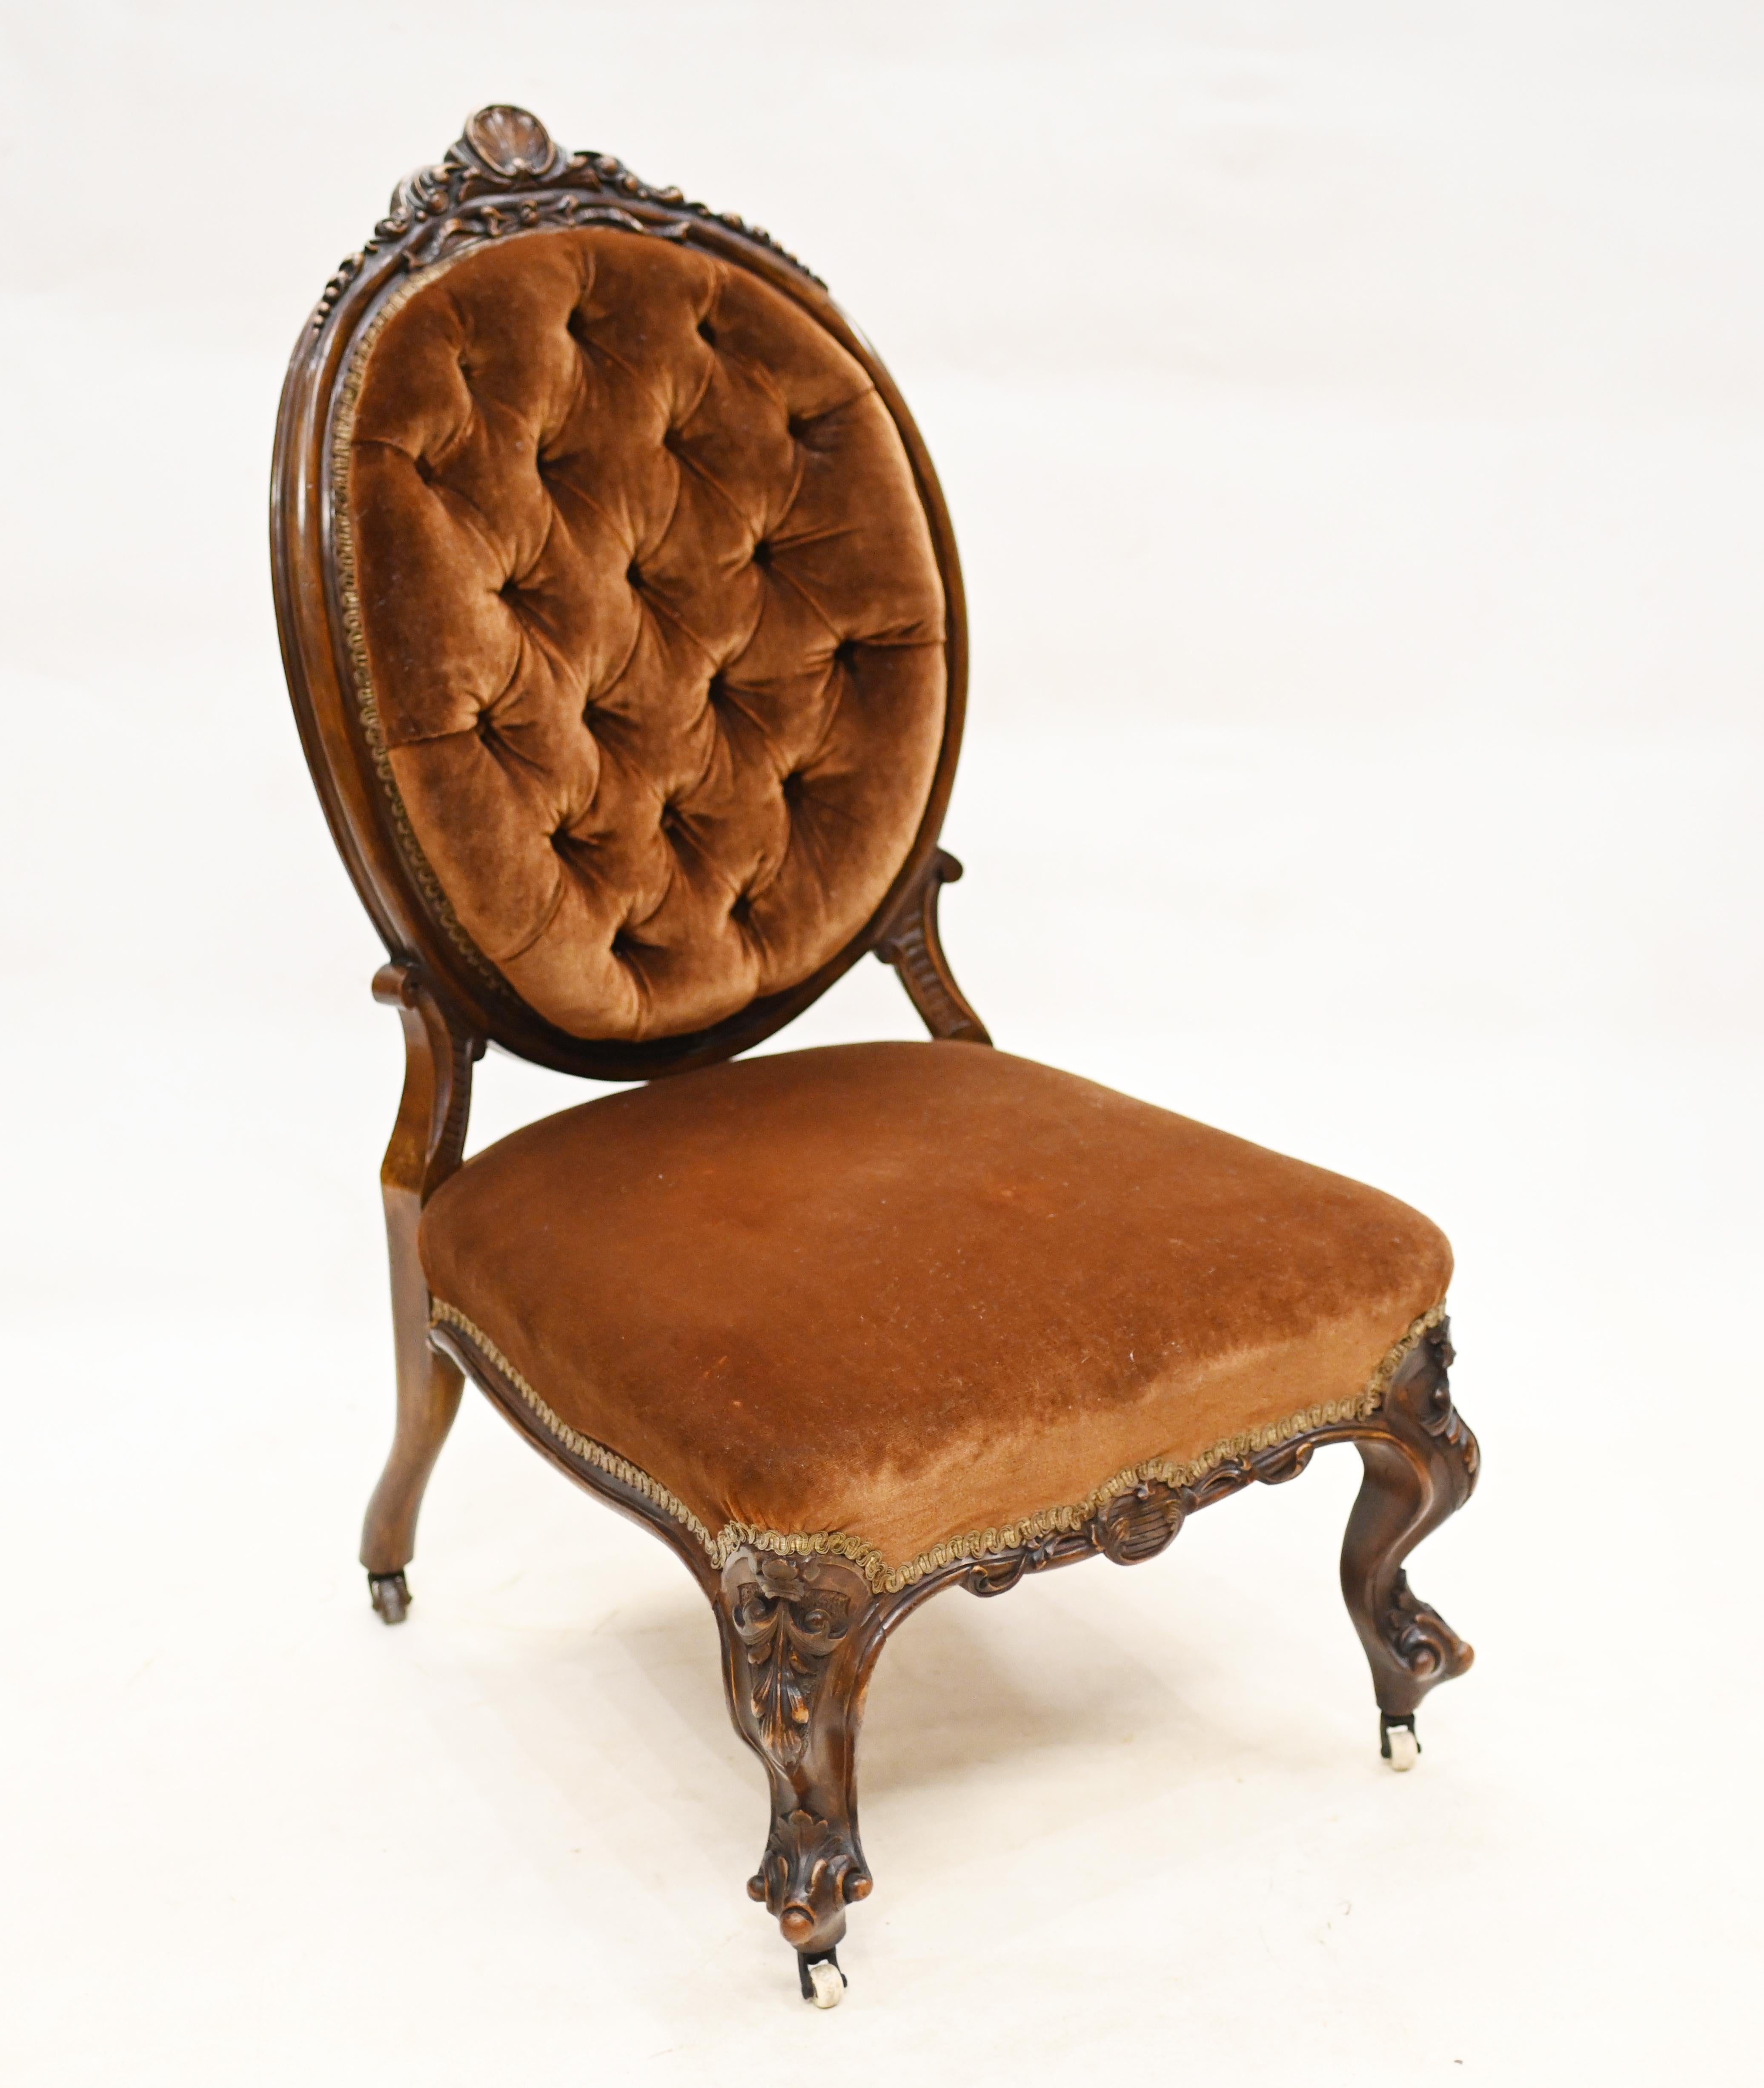 Eleganter viktorianischer Krankenpflegestuhl aus Mahagoni
Kann auch als Salonstuhl verwendet werden
CIRCA 1860 auf diesem Sammlerstück
Der niedrige Sitz verrät, dass er ursprünglich als Krankenpflegestuhl konzipiert wurde.
Angeboten in großer Form